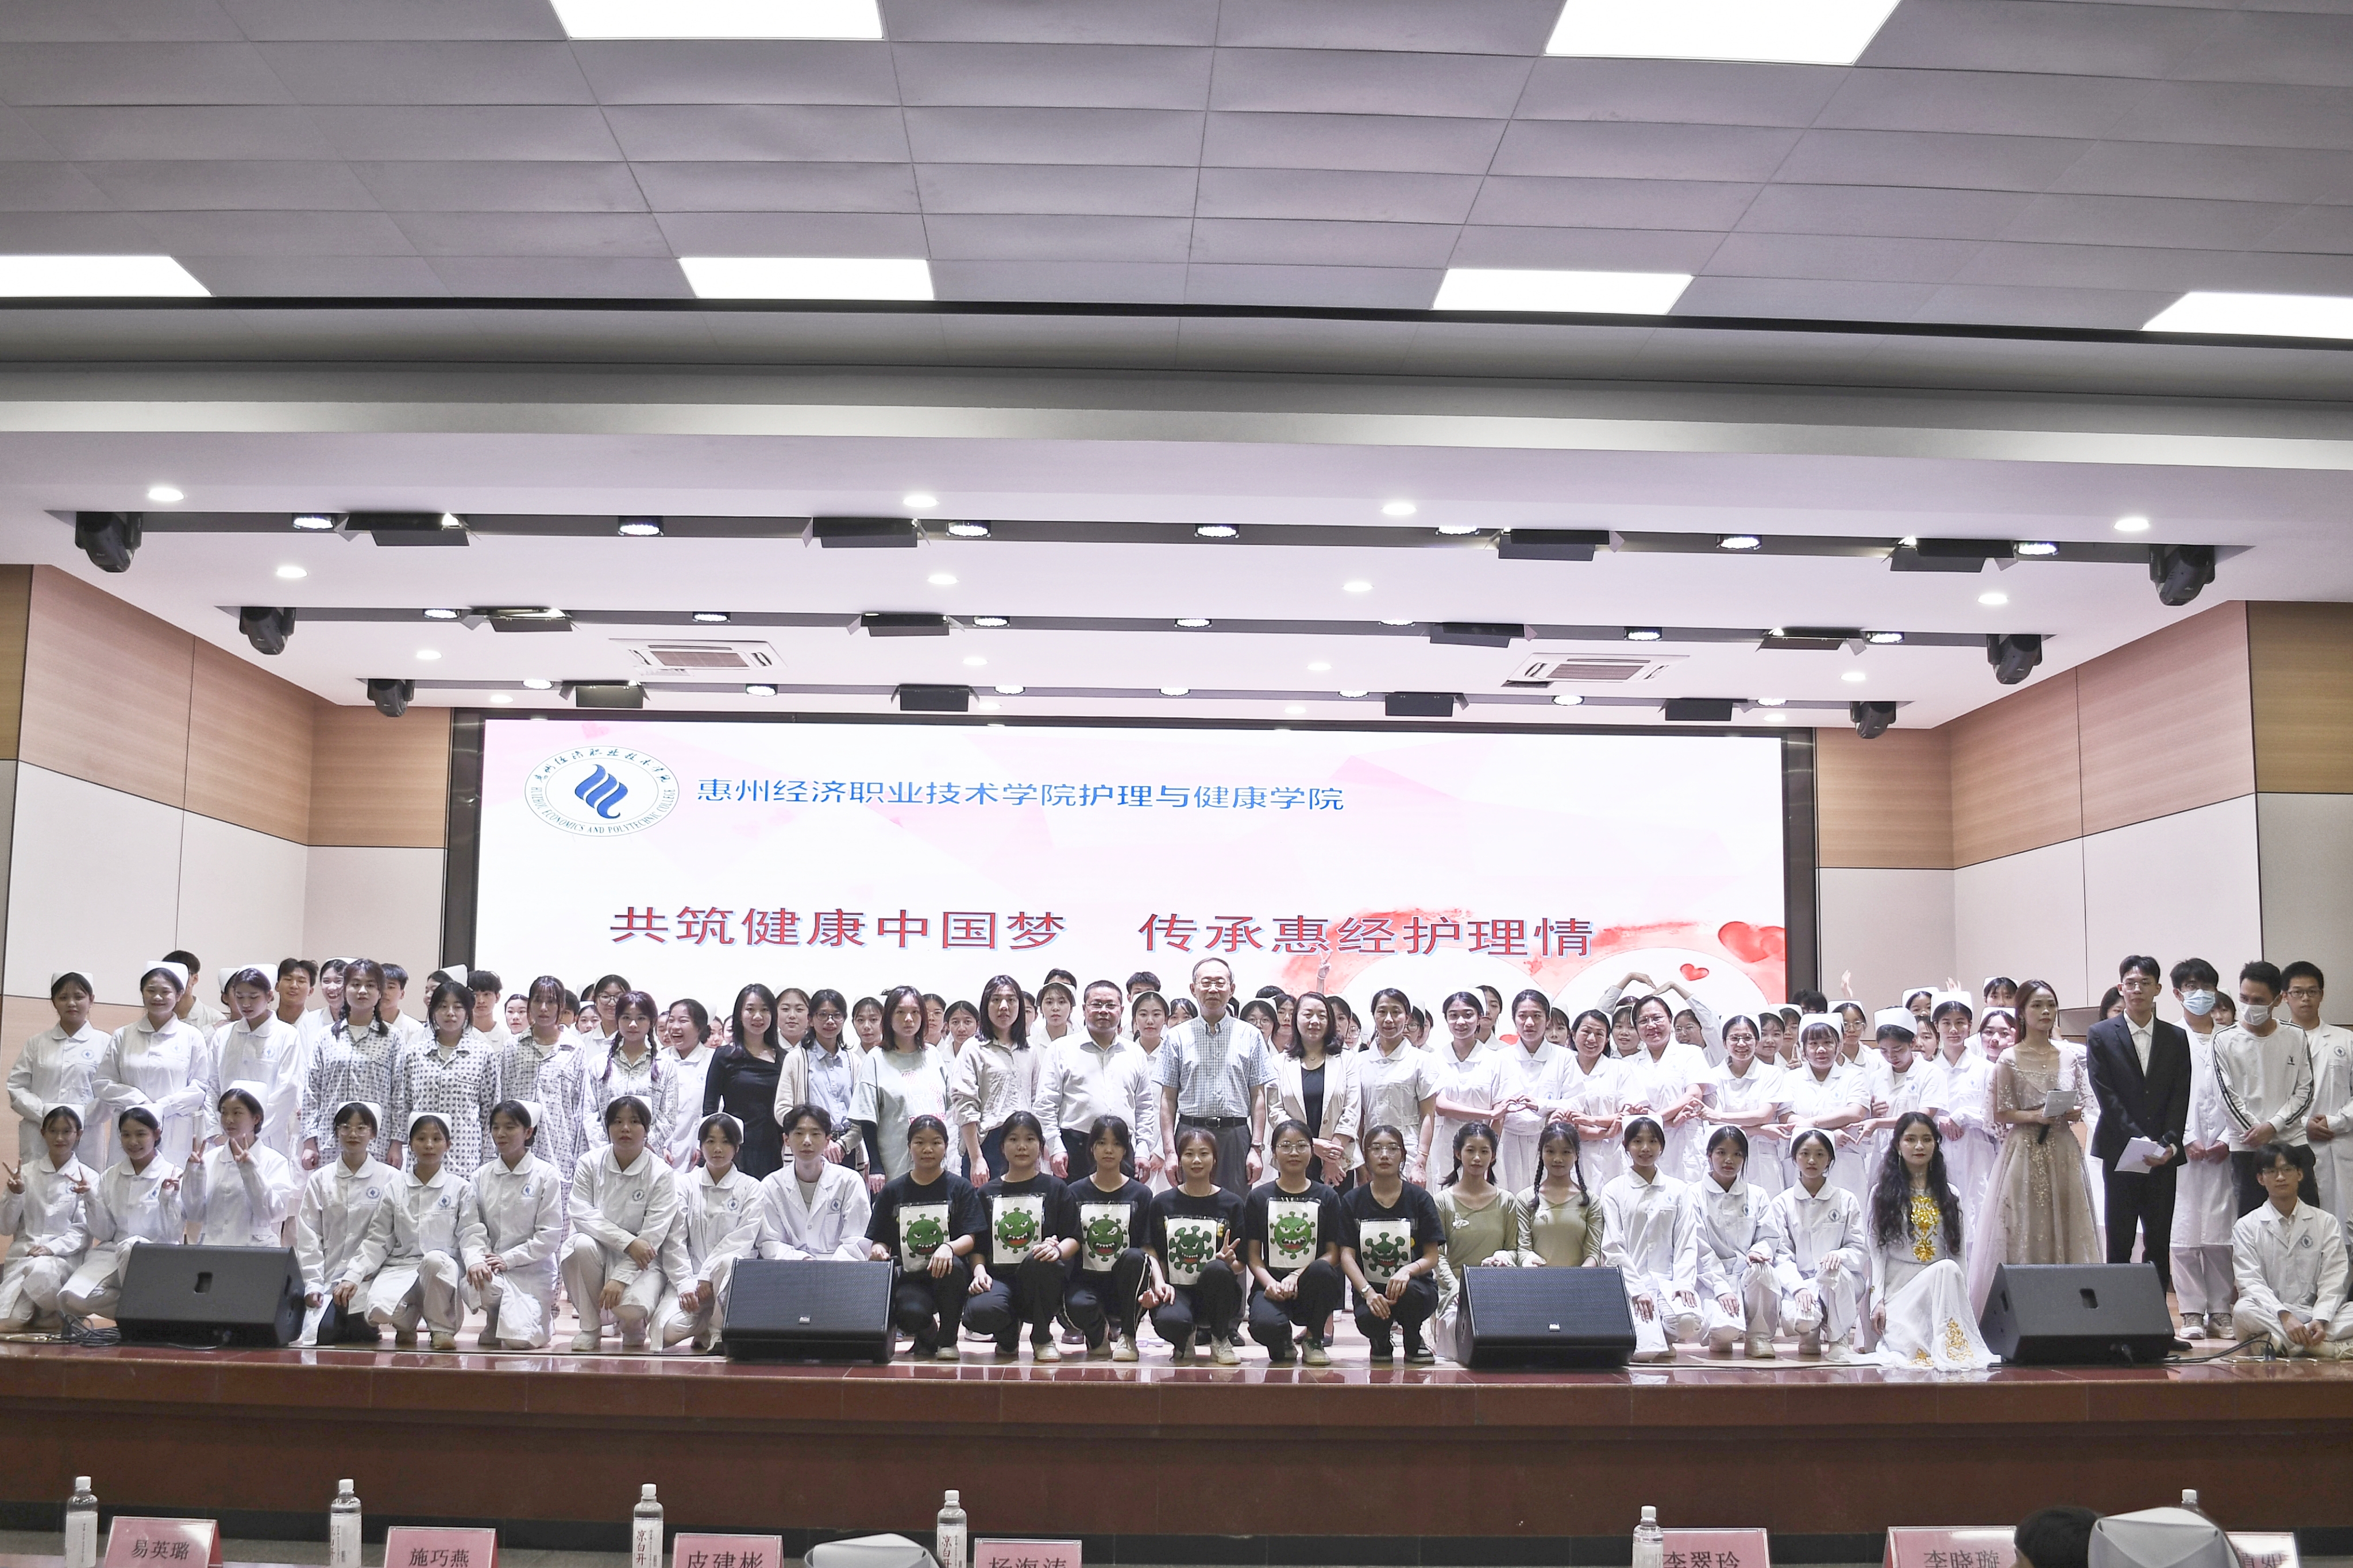 惠州经济职业技术学院职教周系列活动之护理专业 庆5.12国际护士节和授帽仪式